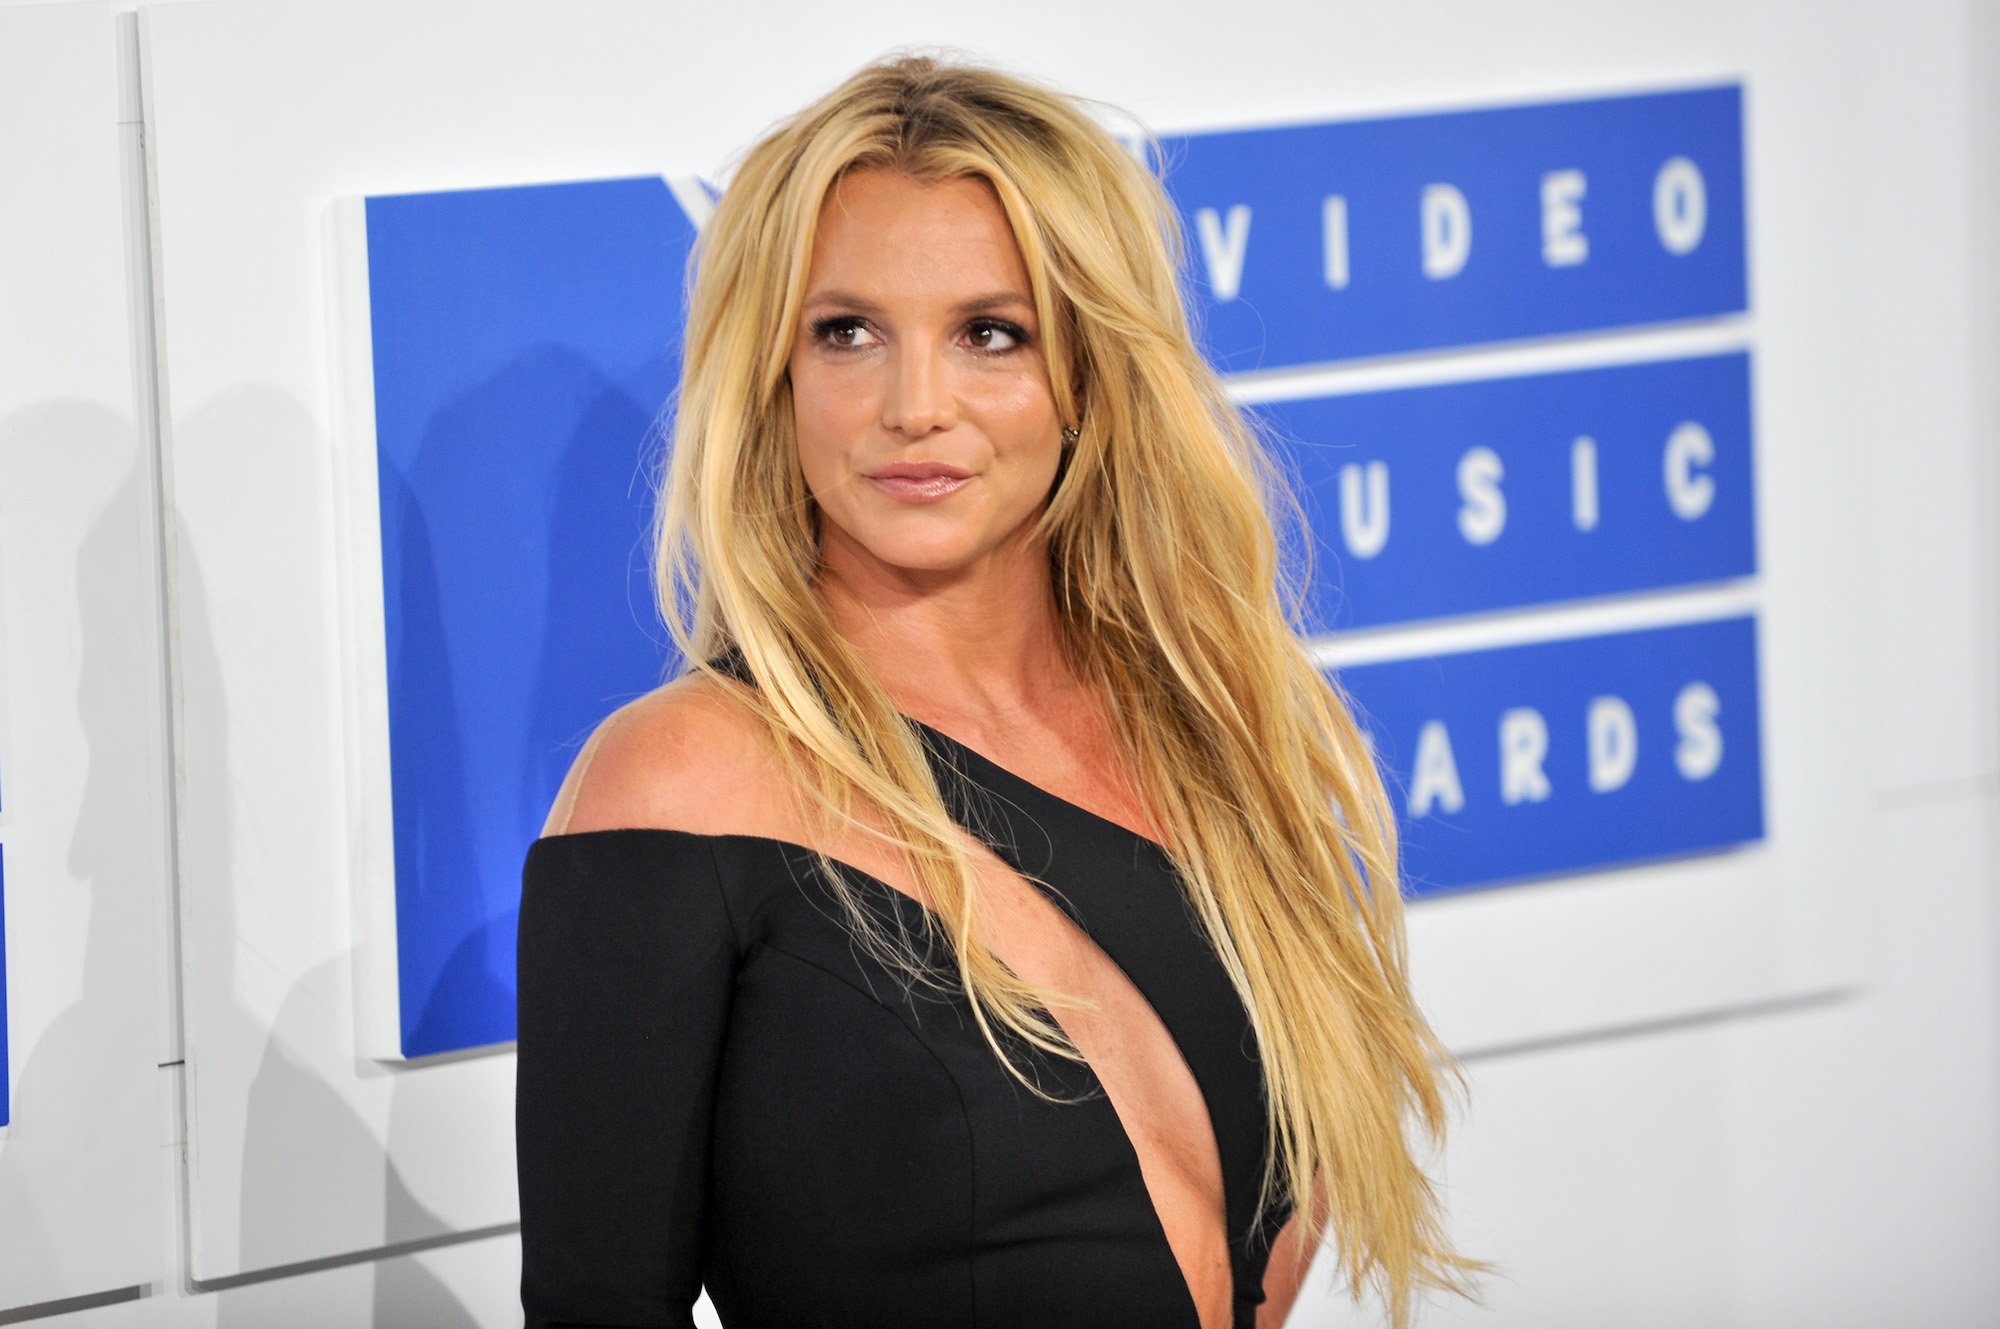 Britney Spears attending the 2016 MTV Video Music Awards